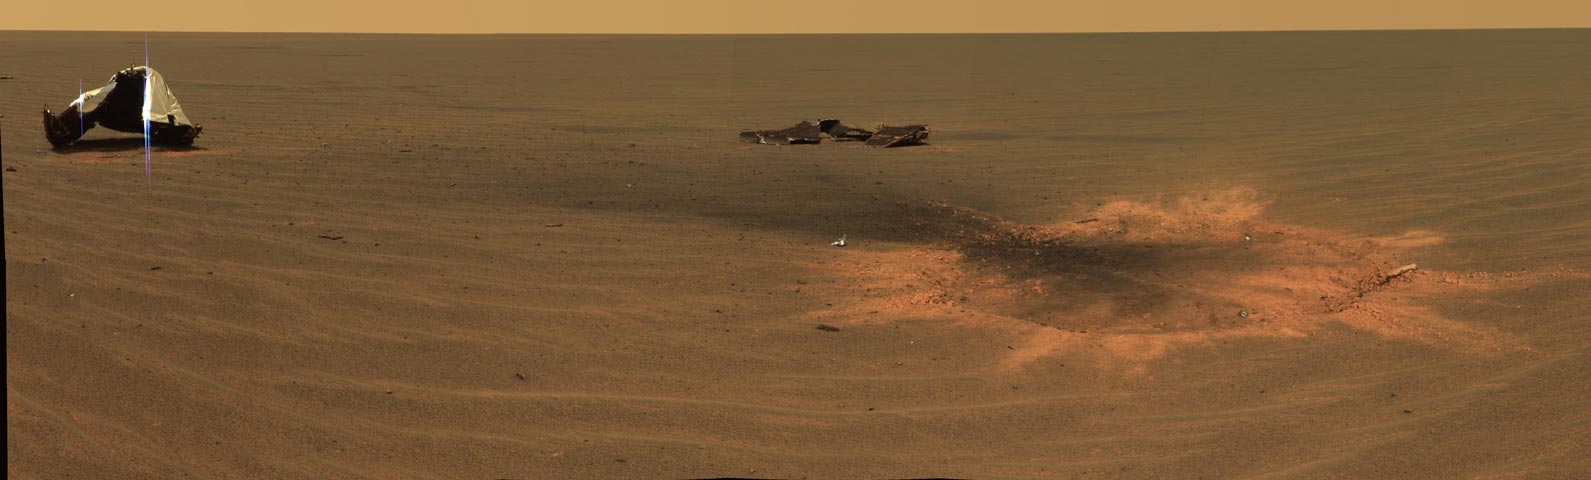 Le cratère d\'impact du bouclier thermique sur Mars